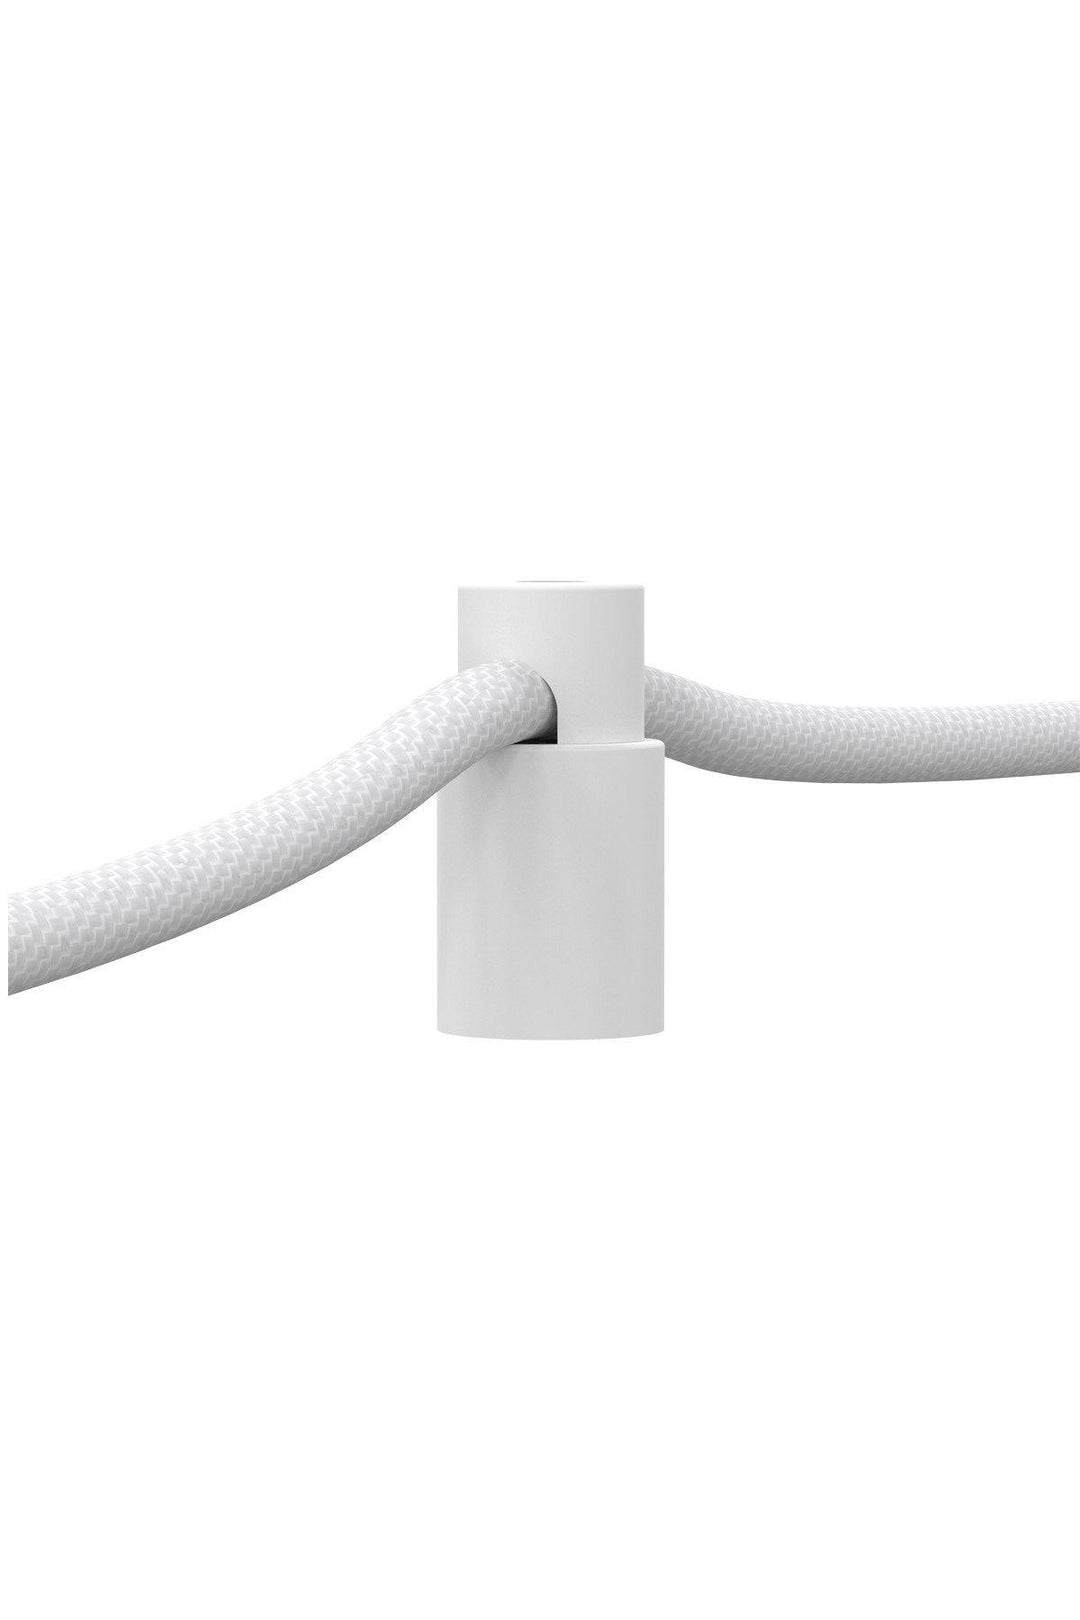 Calex 940092 | Cable Holders | White Aluminium | Pack of 5